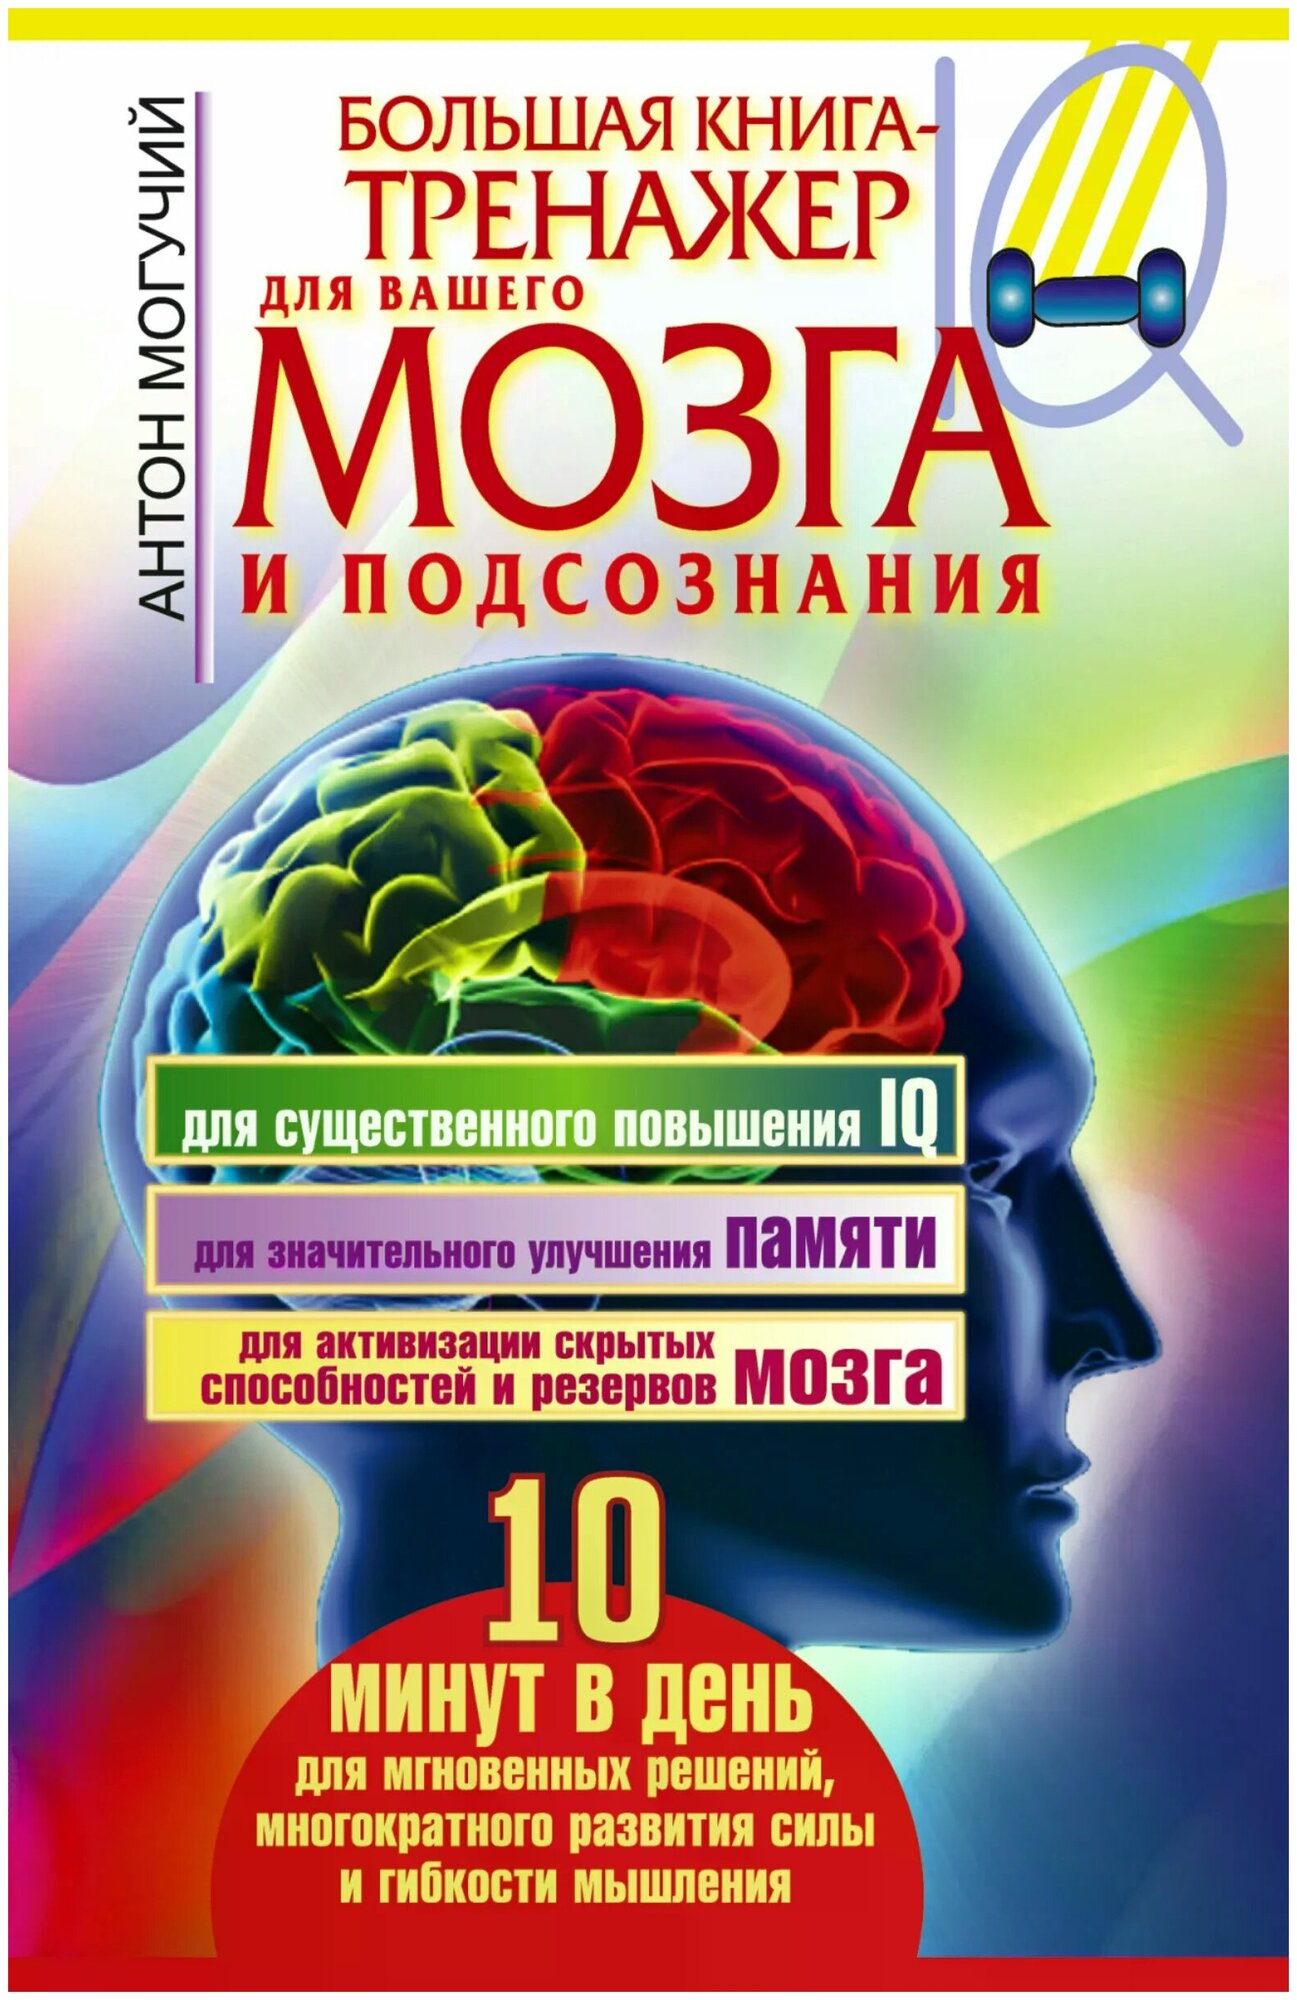 Большая книга-тренажер для вашего мозга и подсознания - фото №1